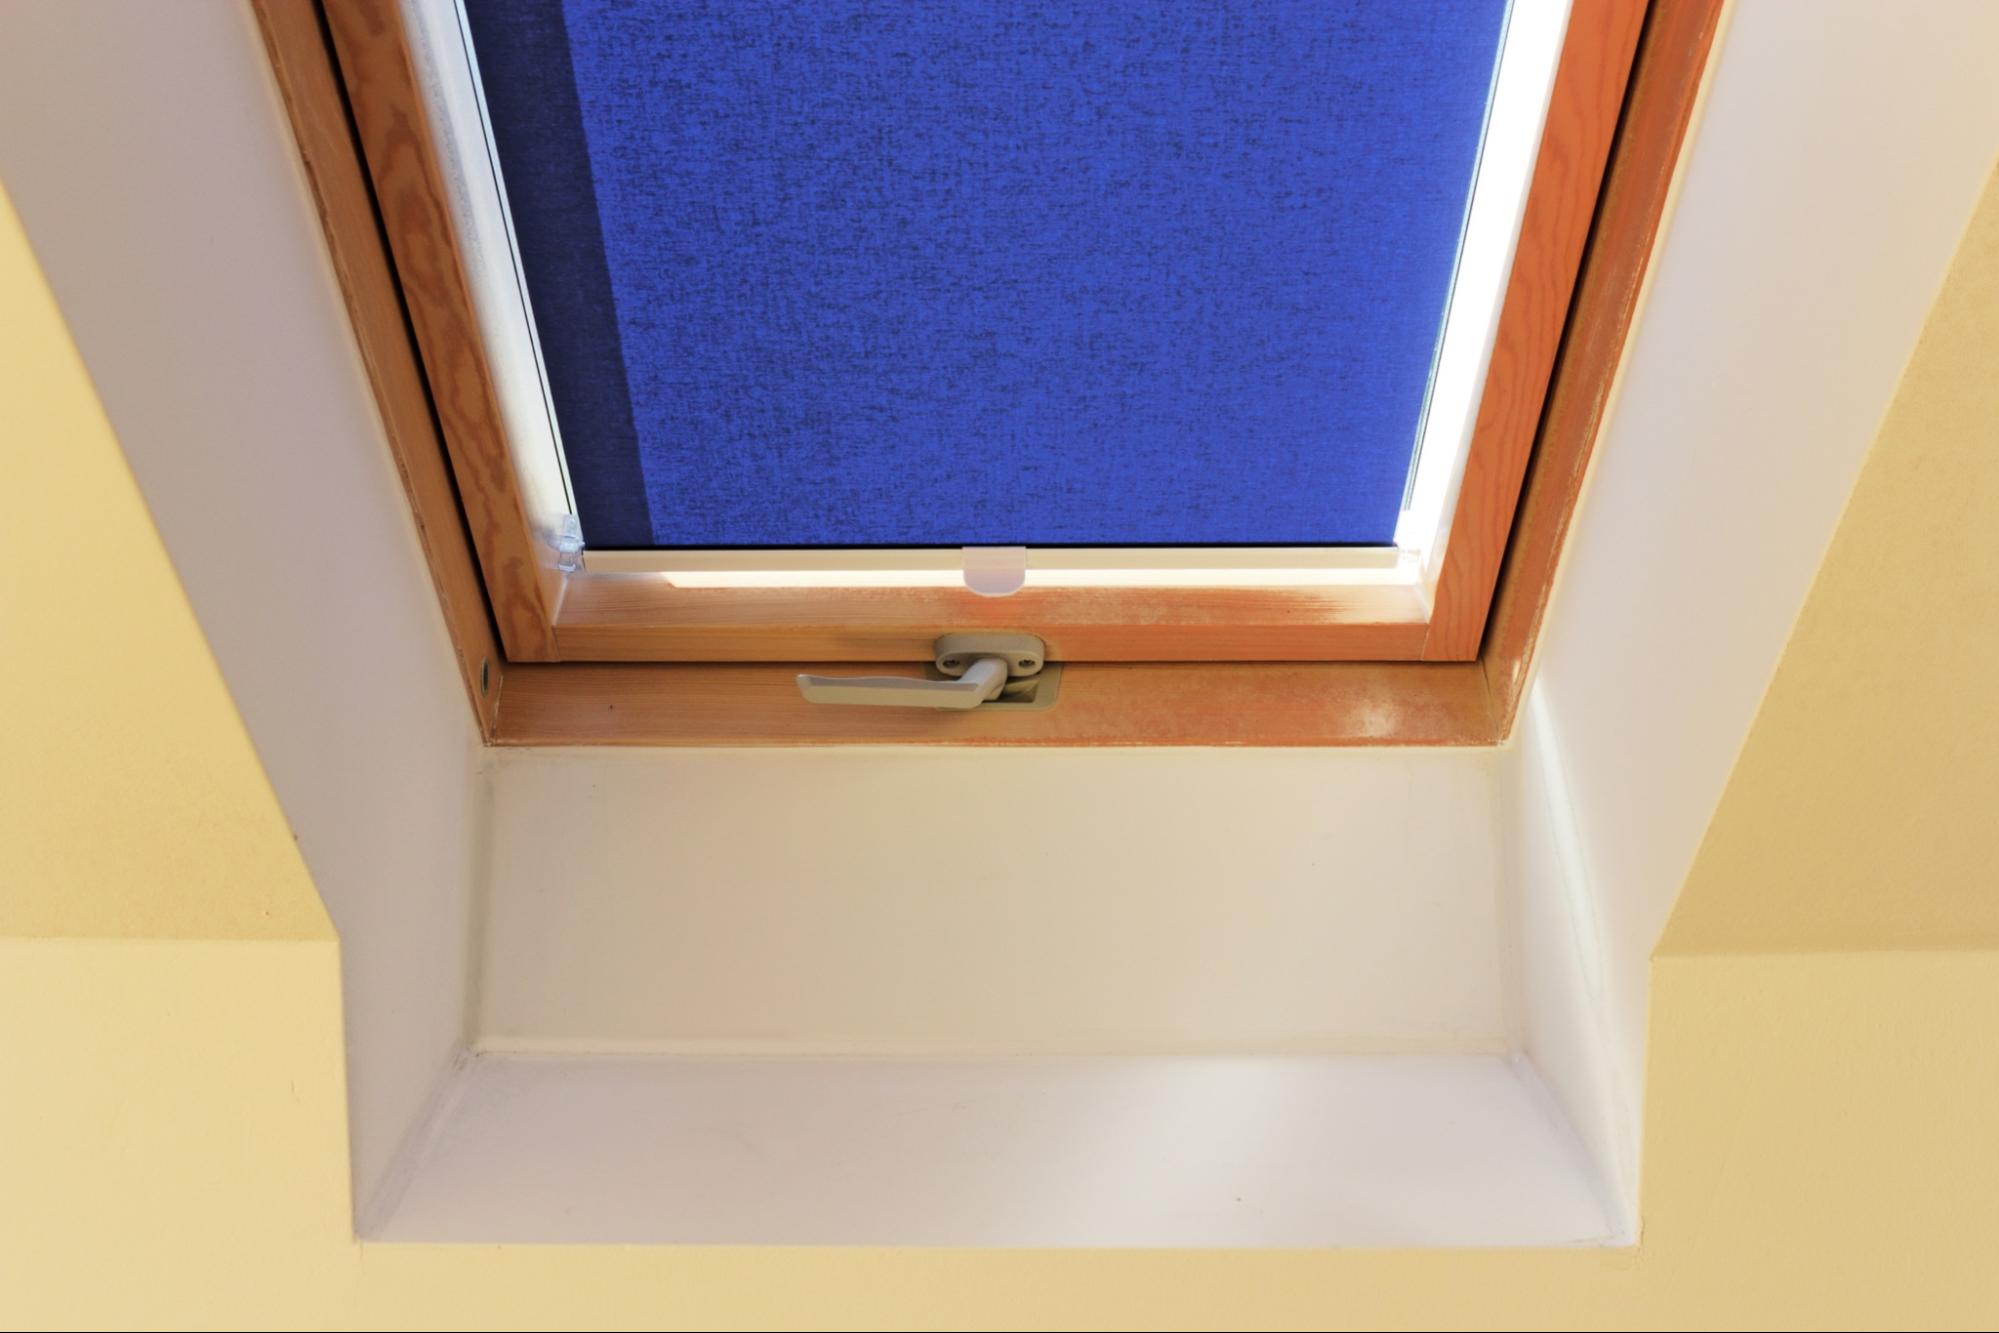 fitting Velux skylight blinds